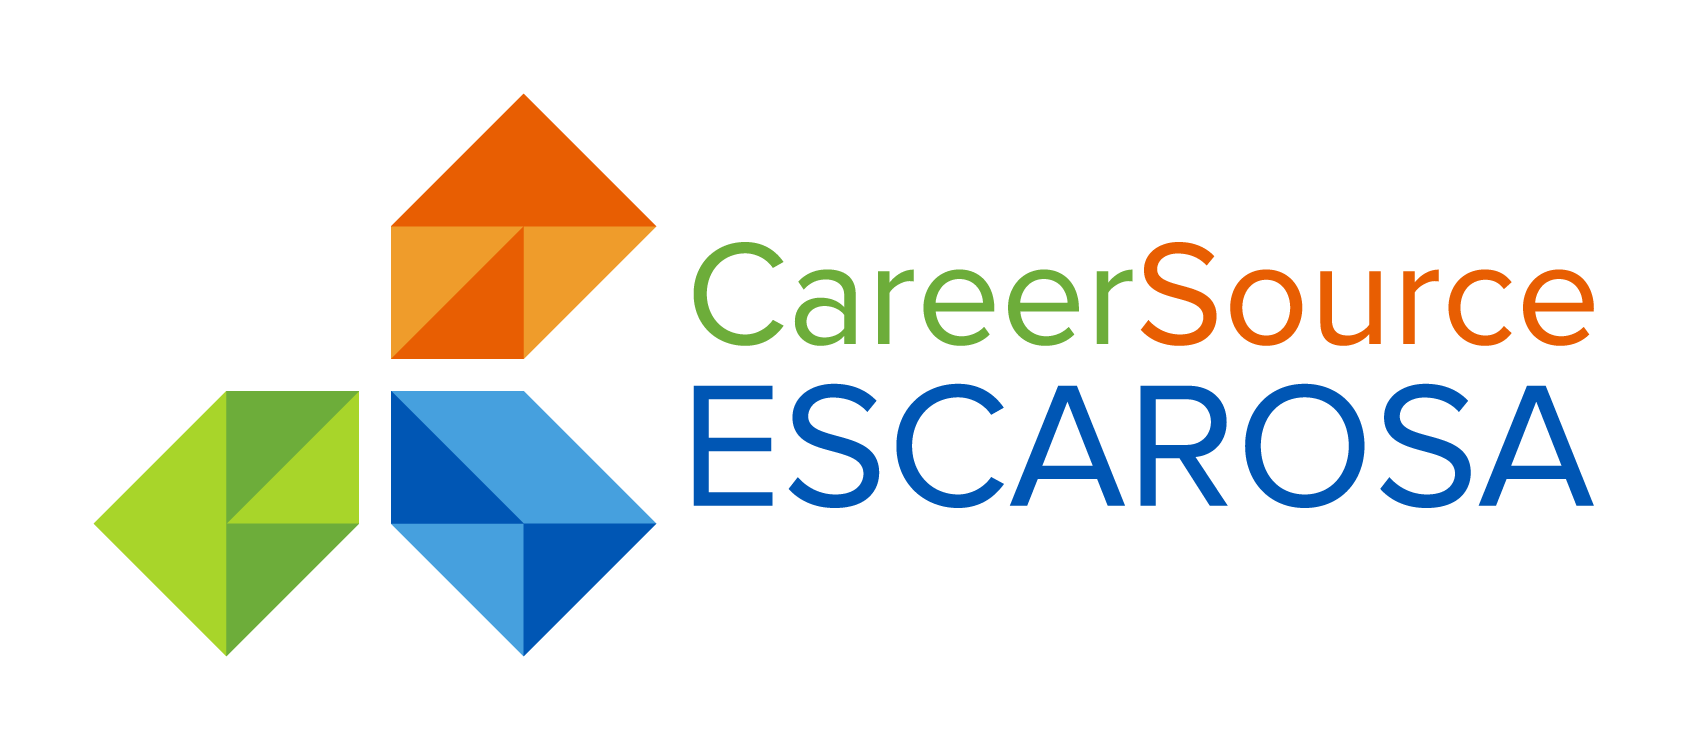 CareerSource Escarosa logo